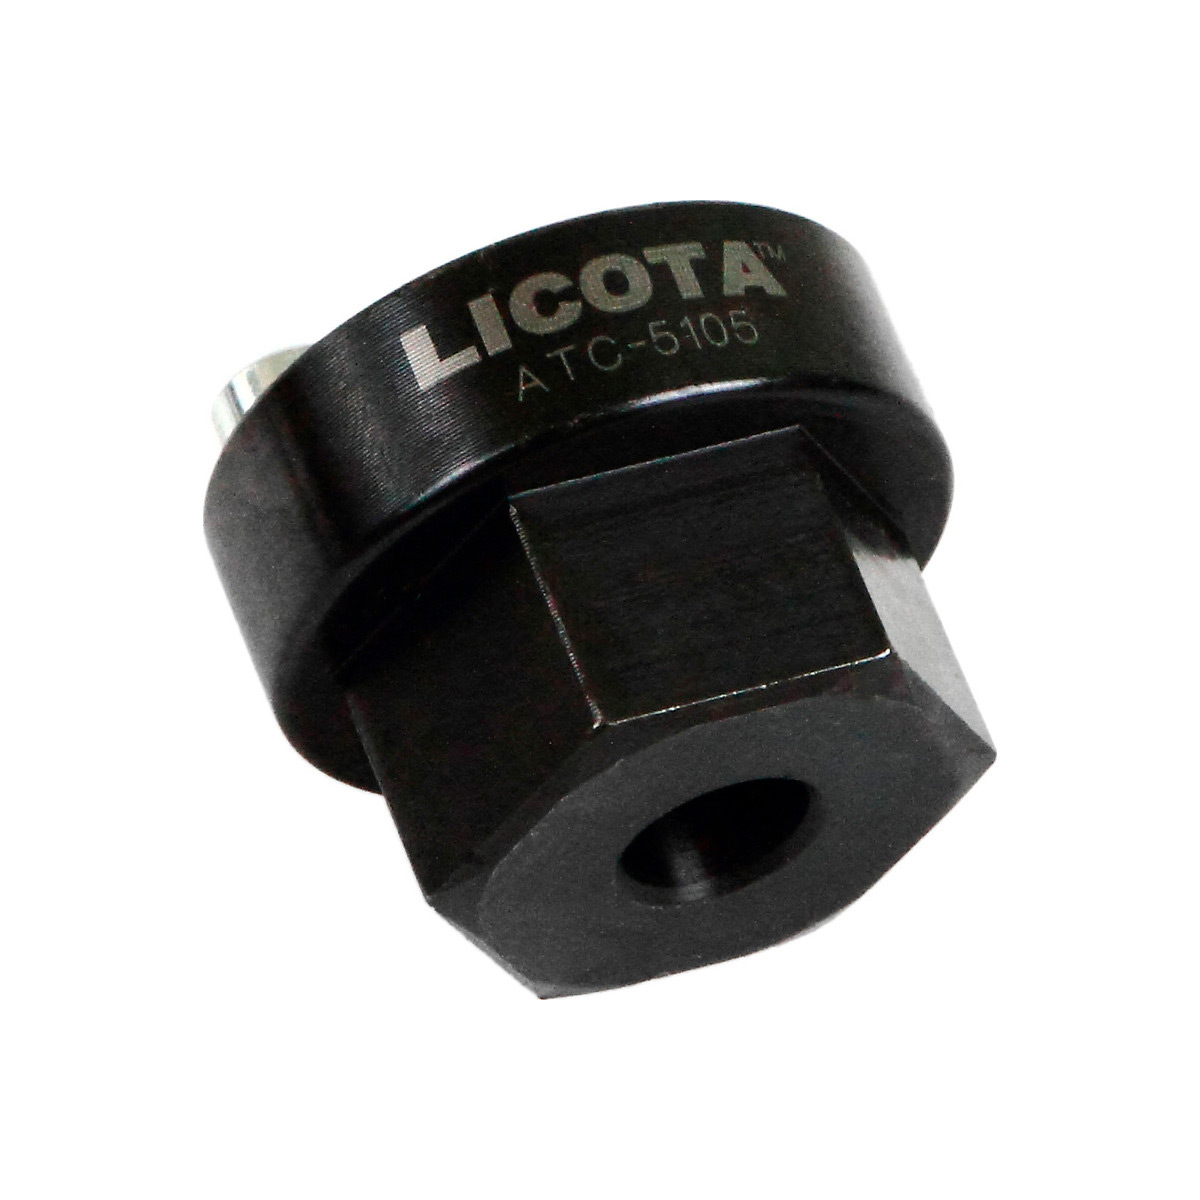 Головка для пальцев рессор Licota ATC-5105 Volvo